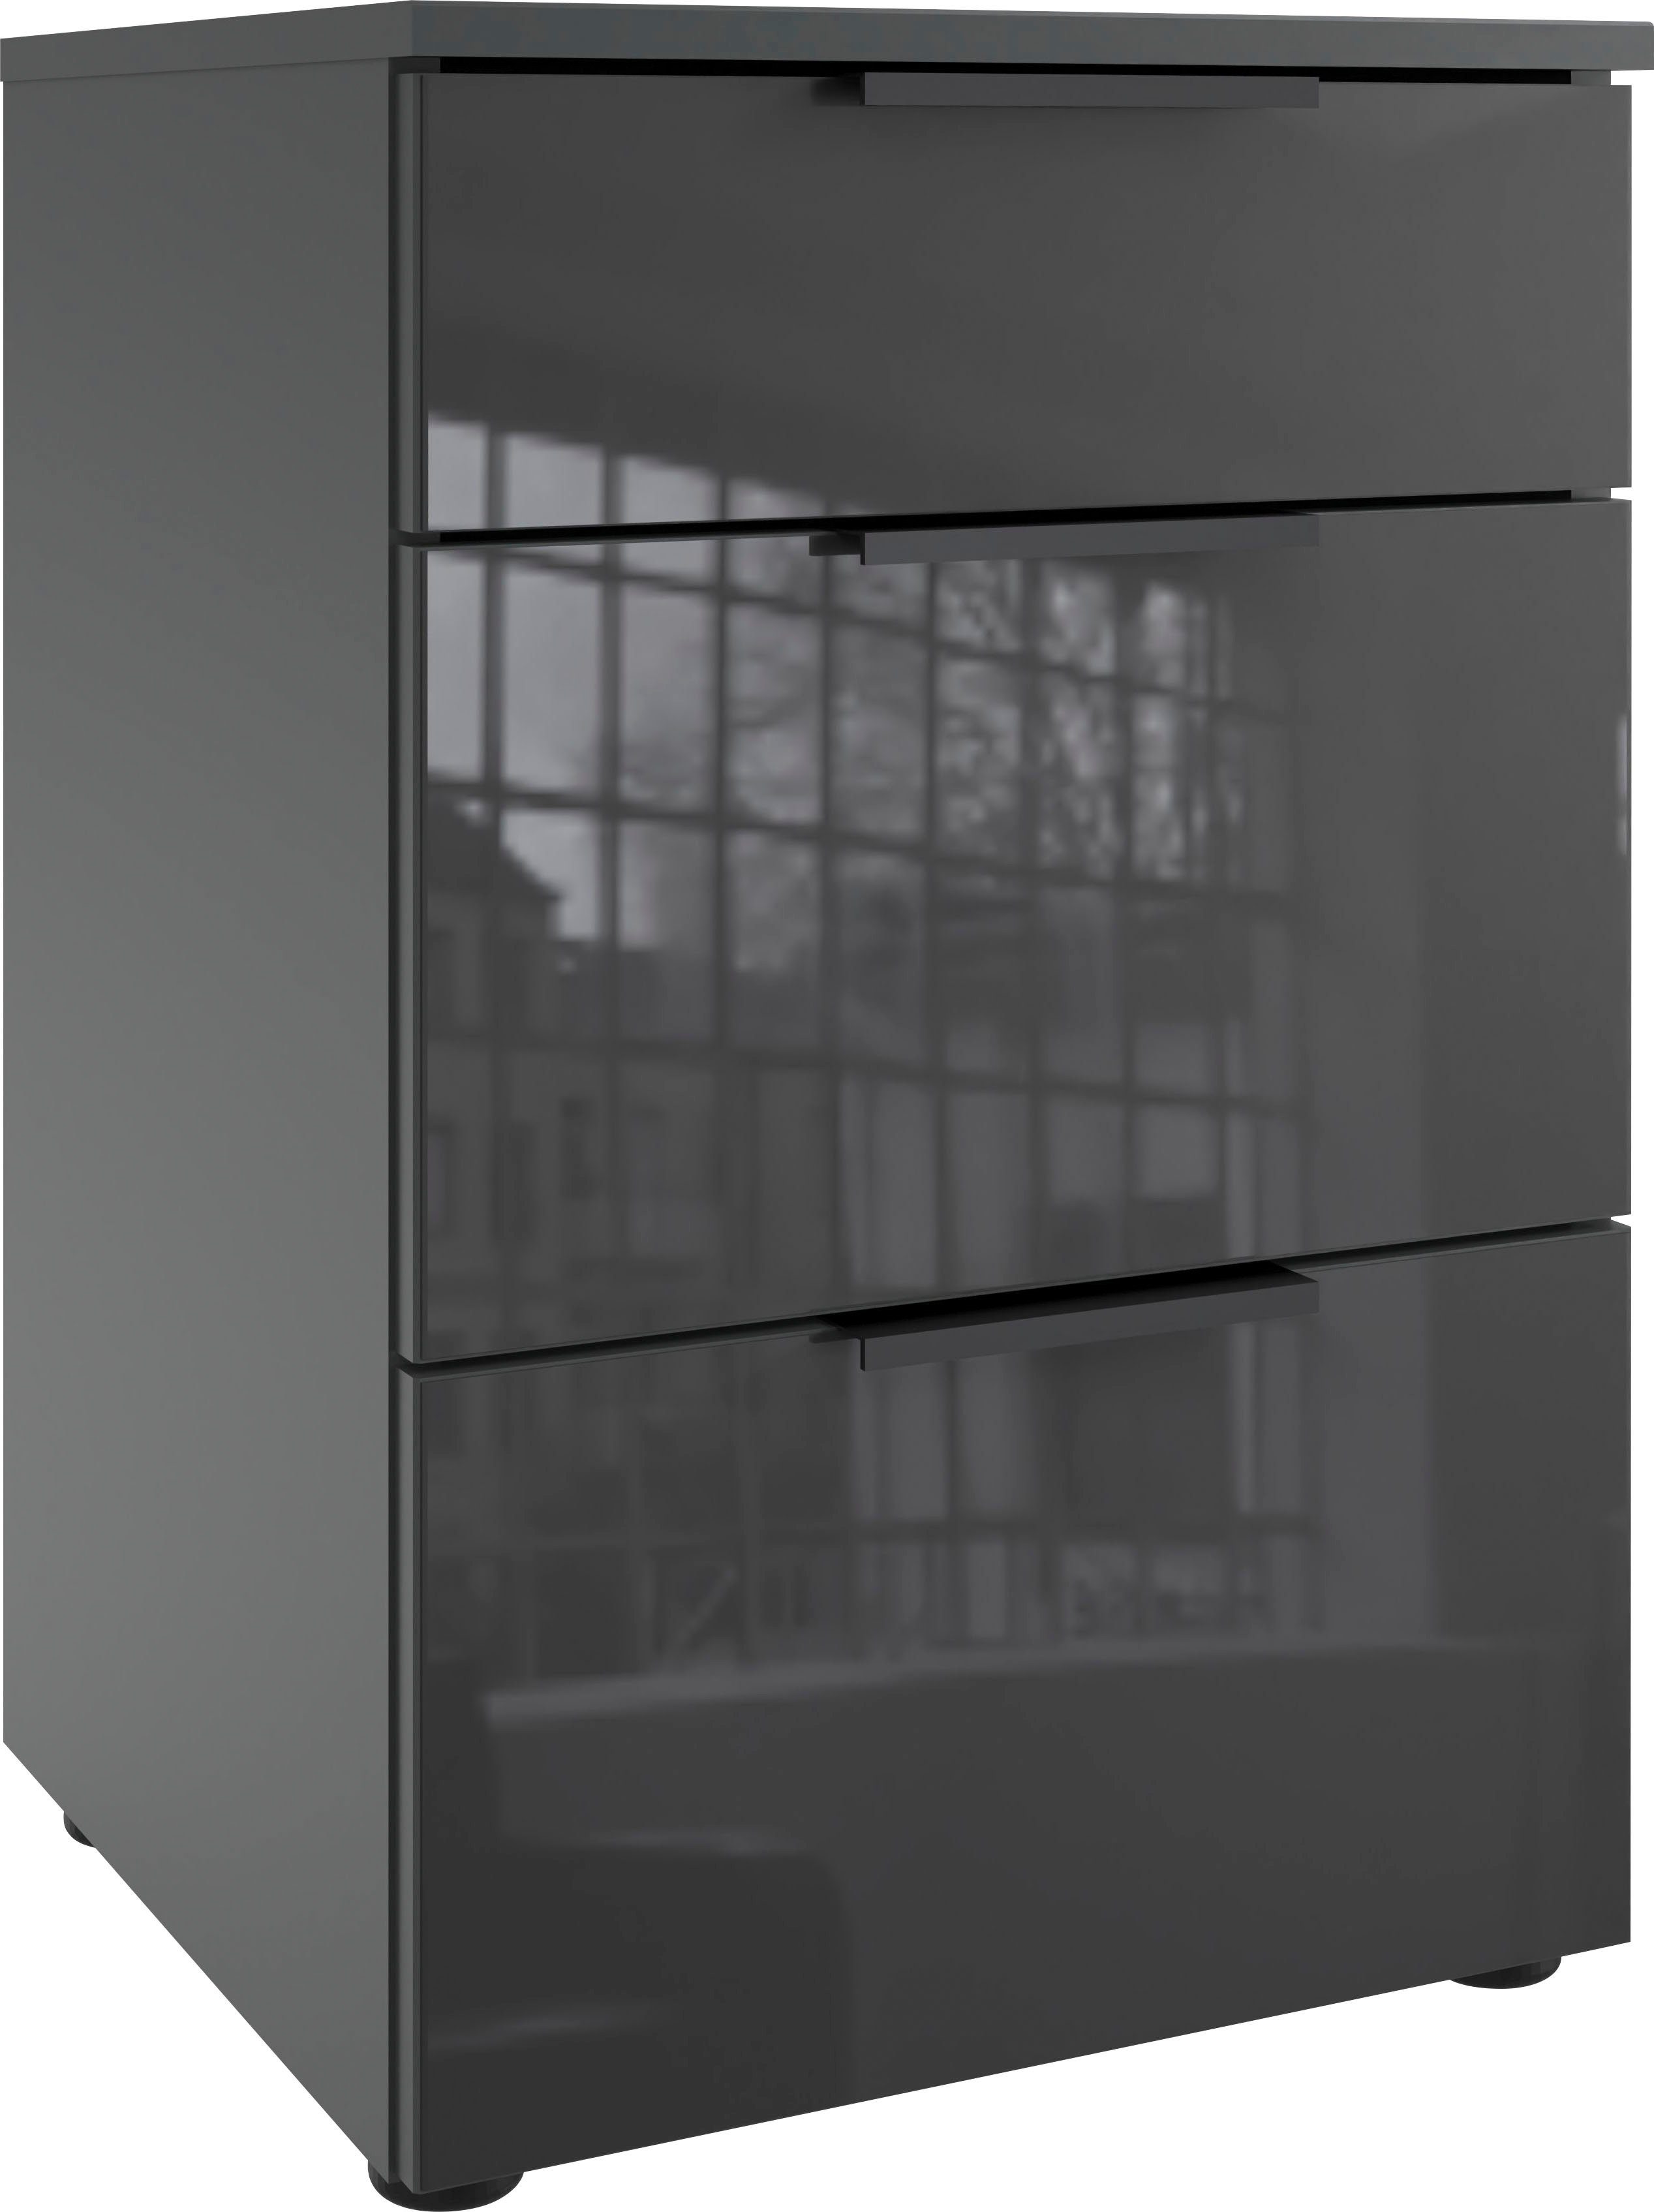 Wimex Nachtkastje Level36 black C met glazen elementen aan de voorkant, soft-close functie, 41 cm breed